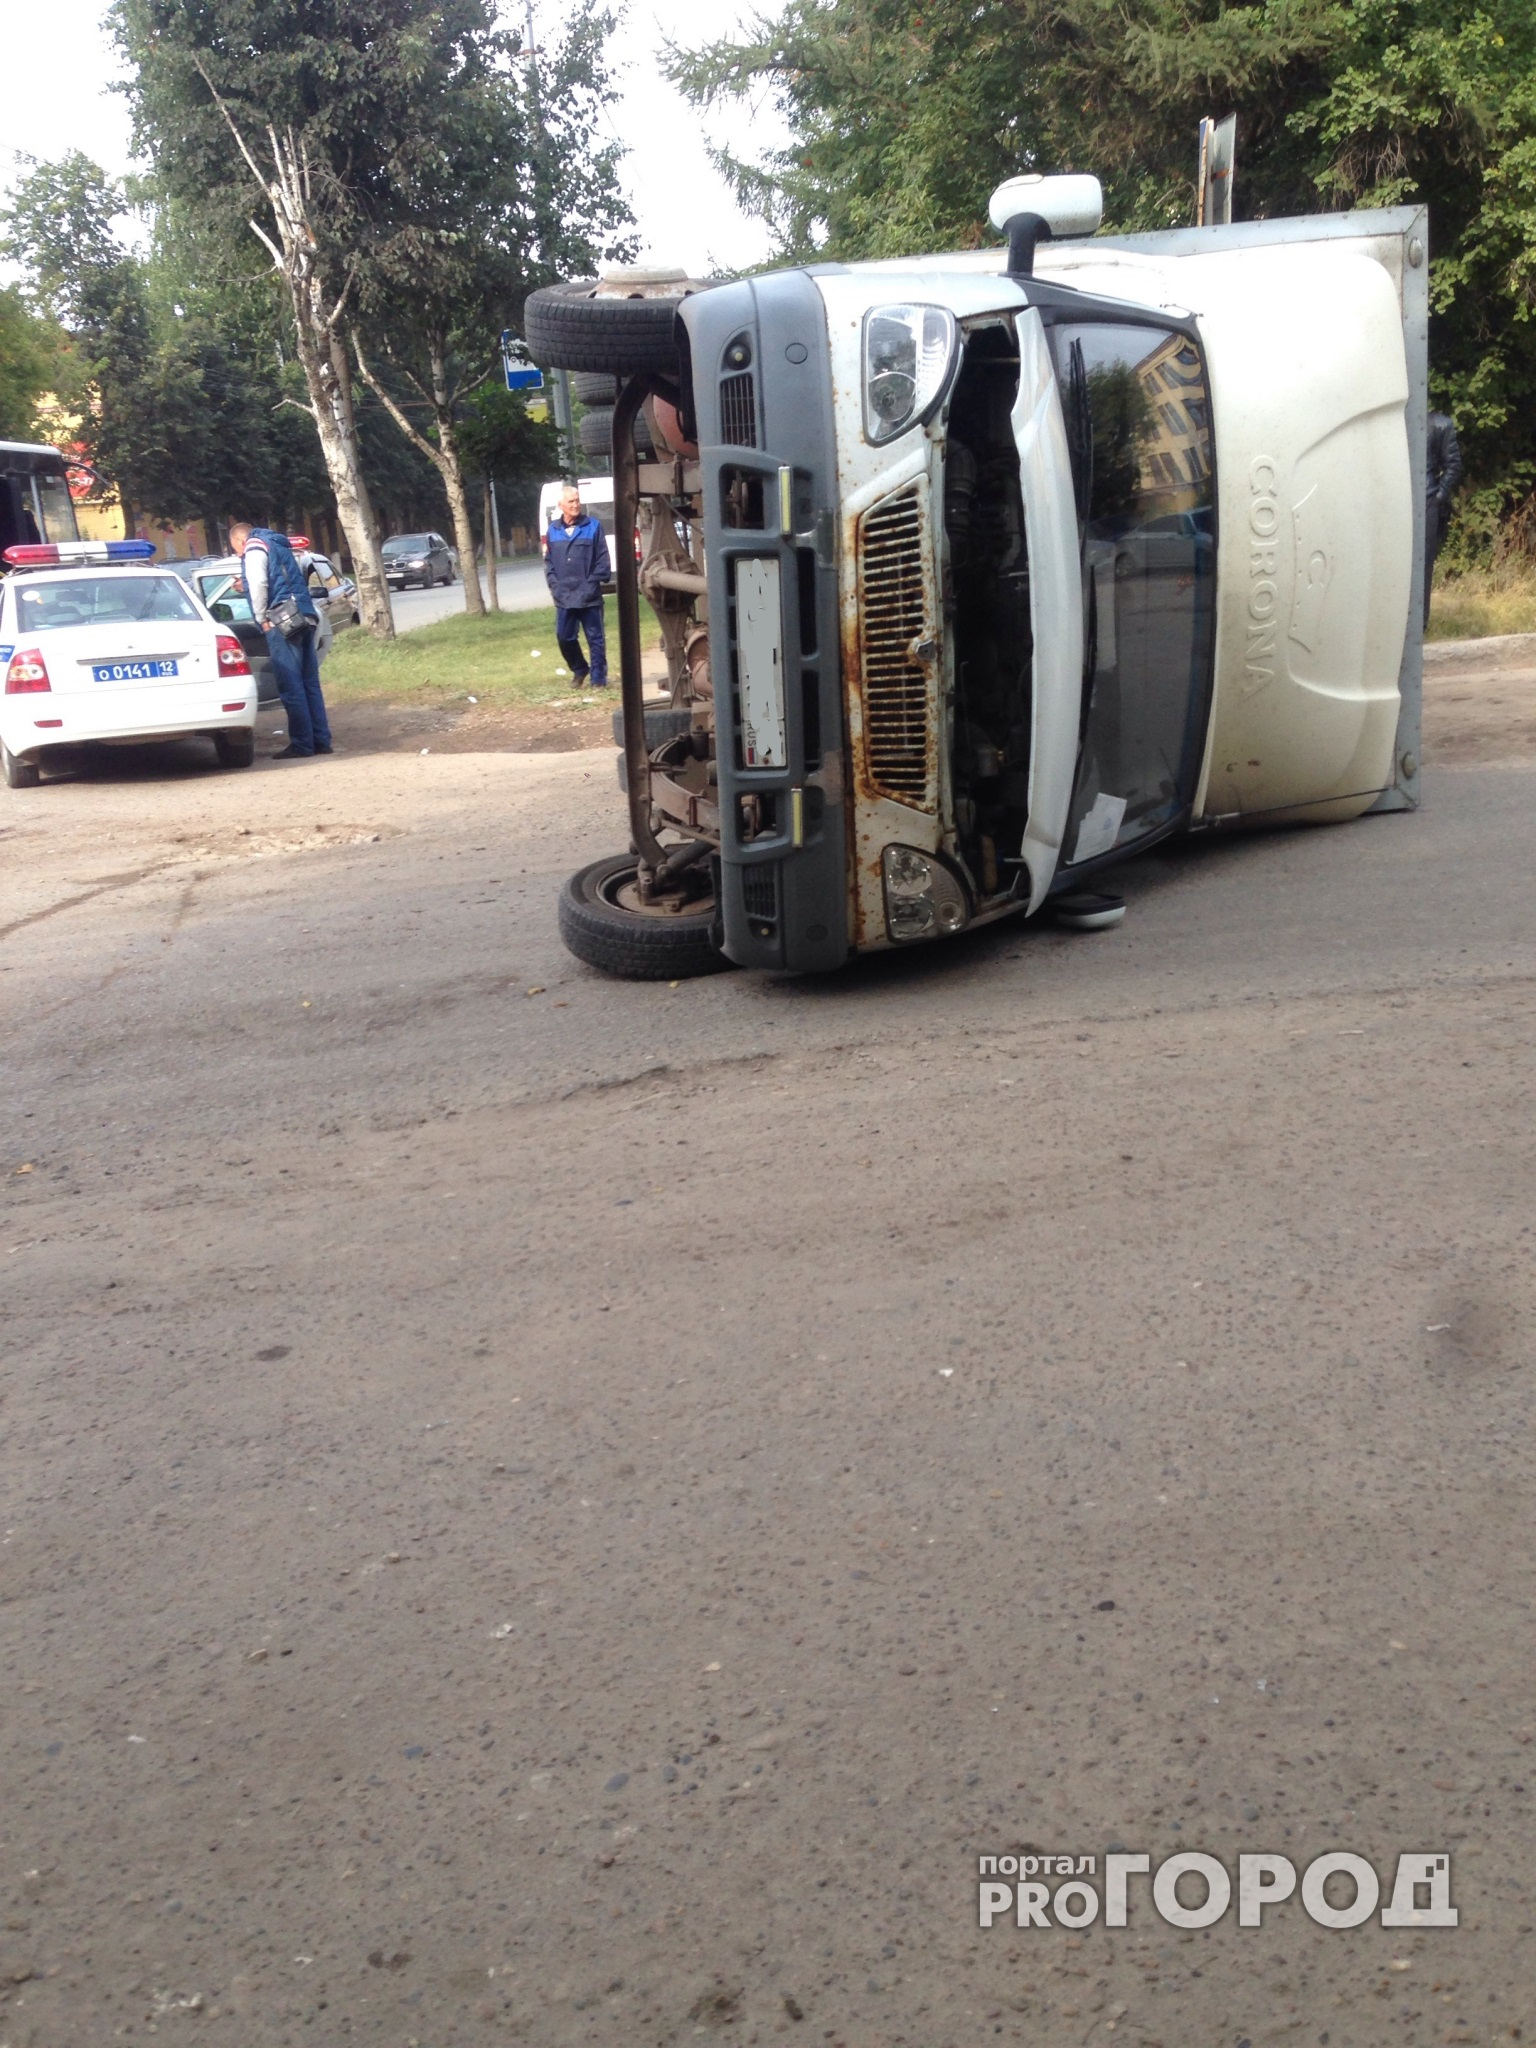 В Йошкар-Оле автобус врезался в Газель, есть пострадавшие